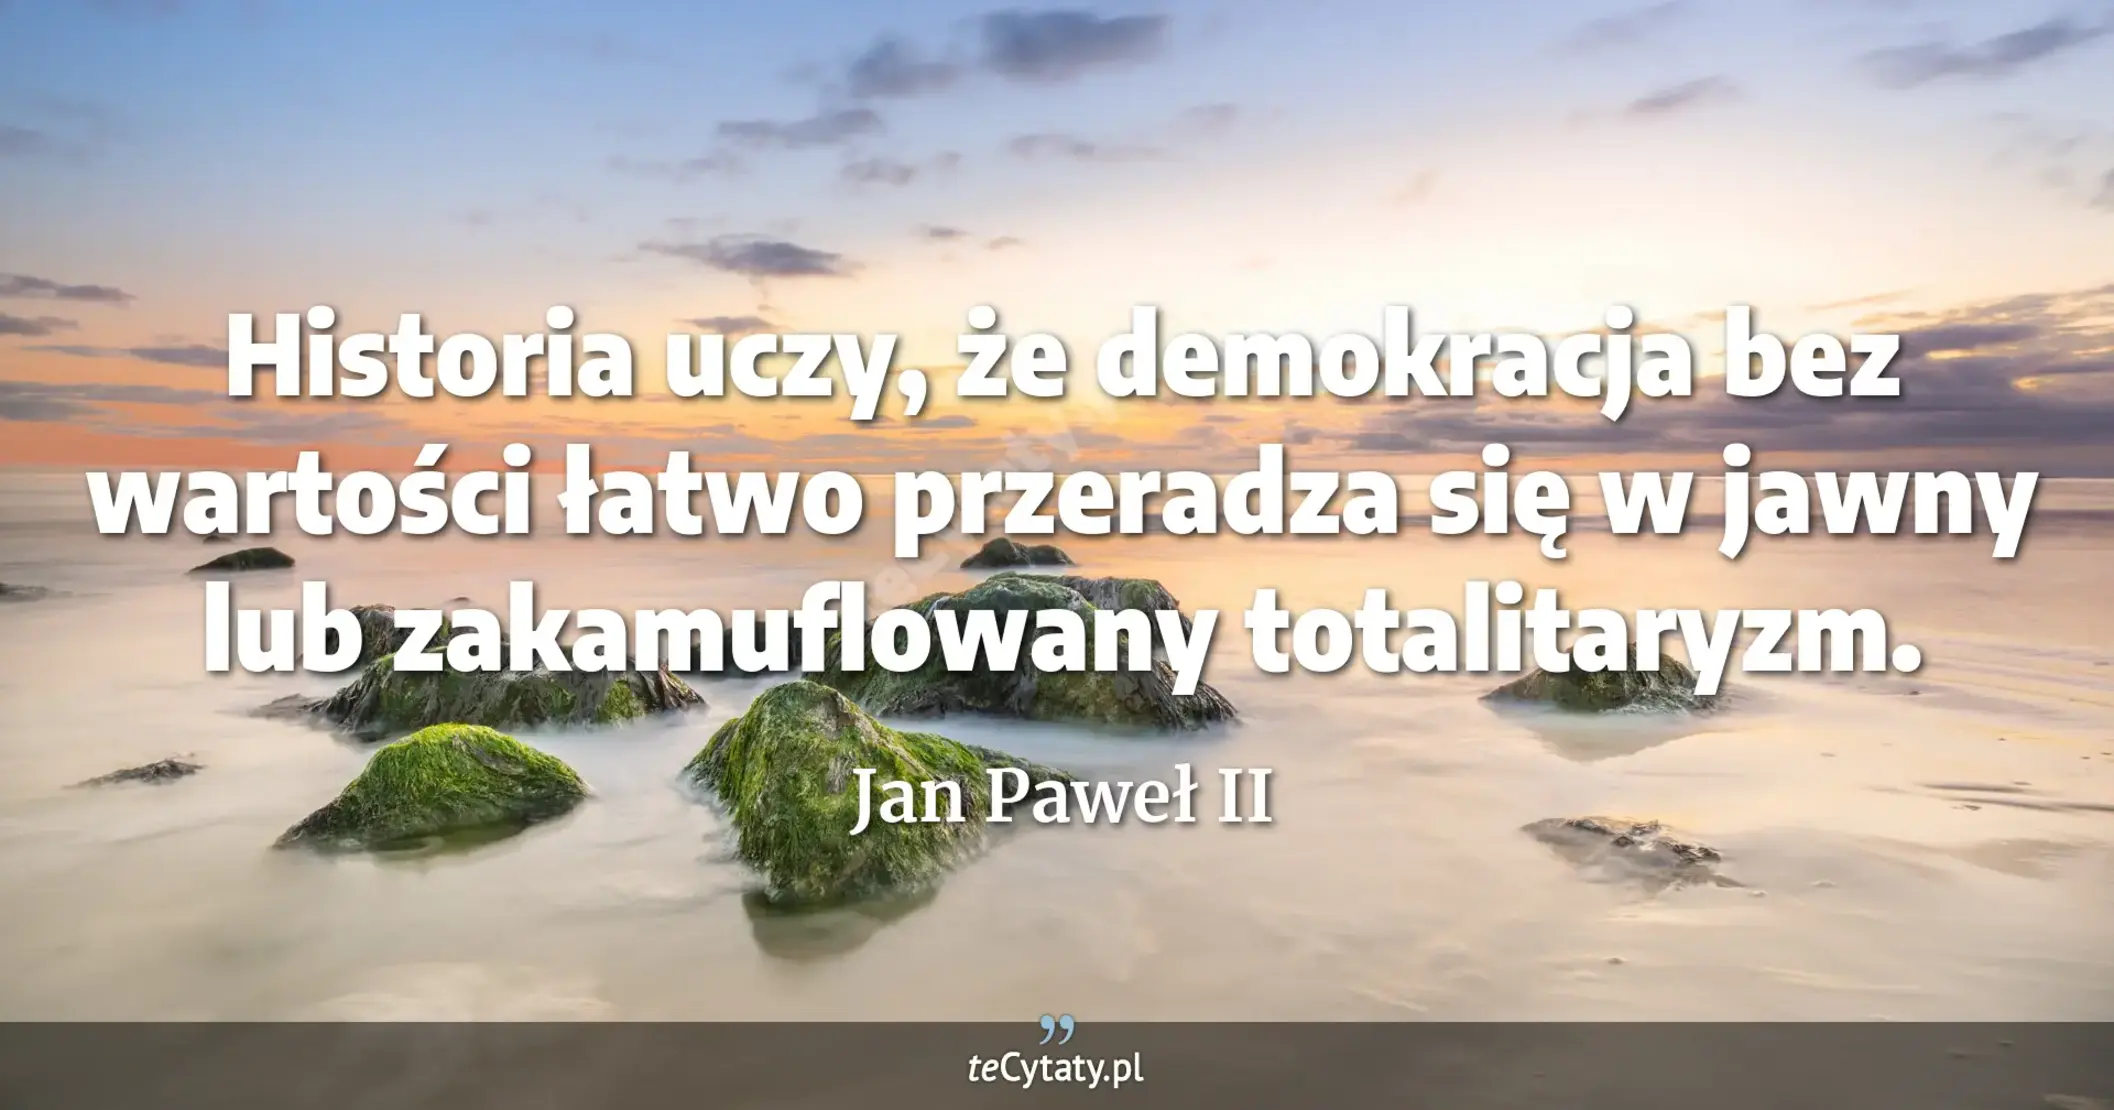 Historia uczy, że demokracja bez wartości łatwo przeradza się w jawny lub zakamuflowany totalitaryzm. - Jan Paweł II